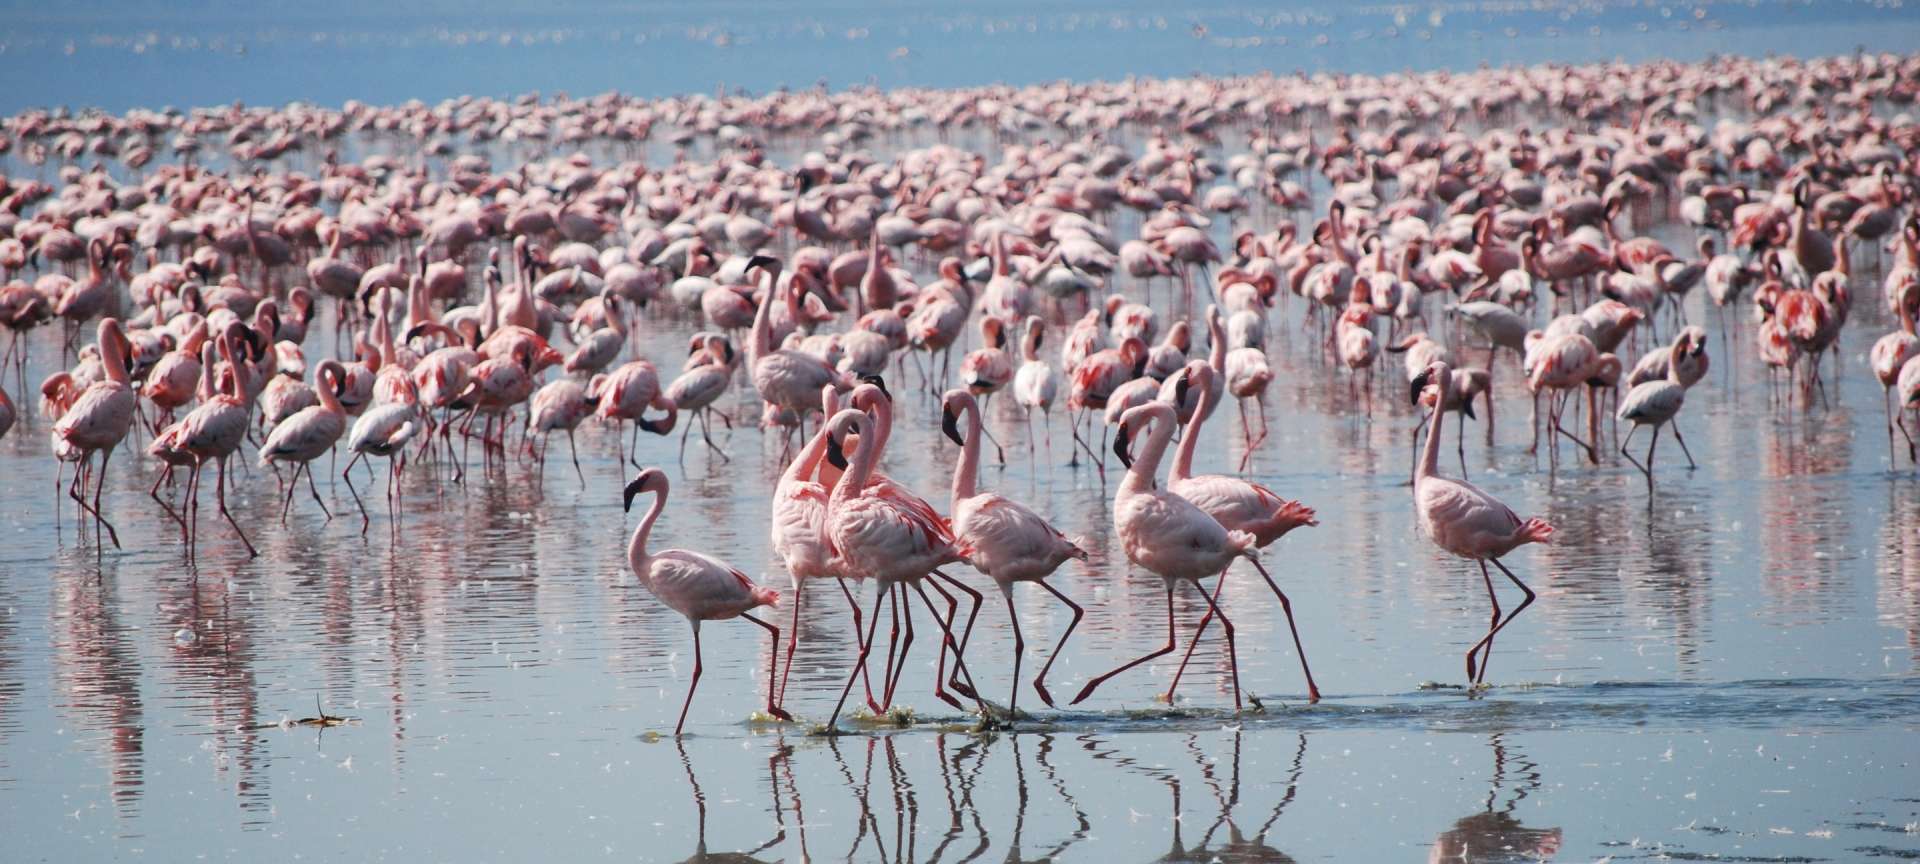 Flamingos make for amazing photographic subjects